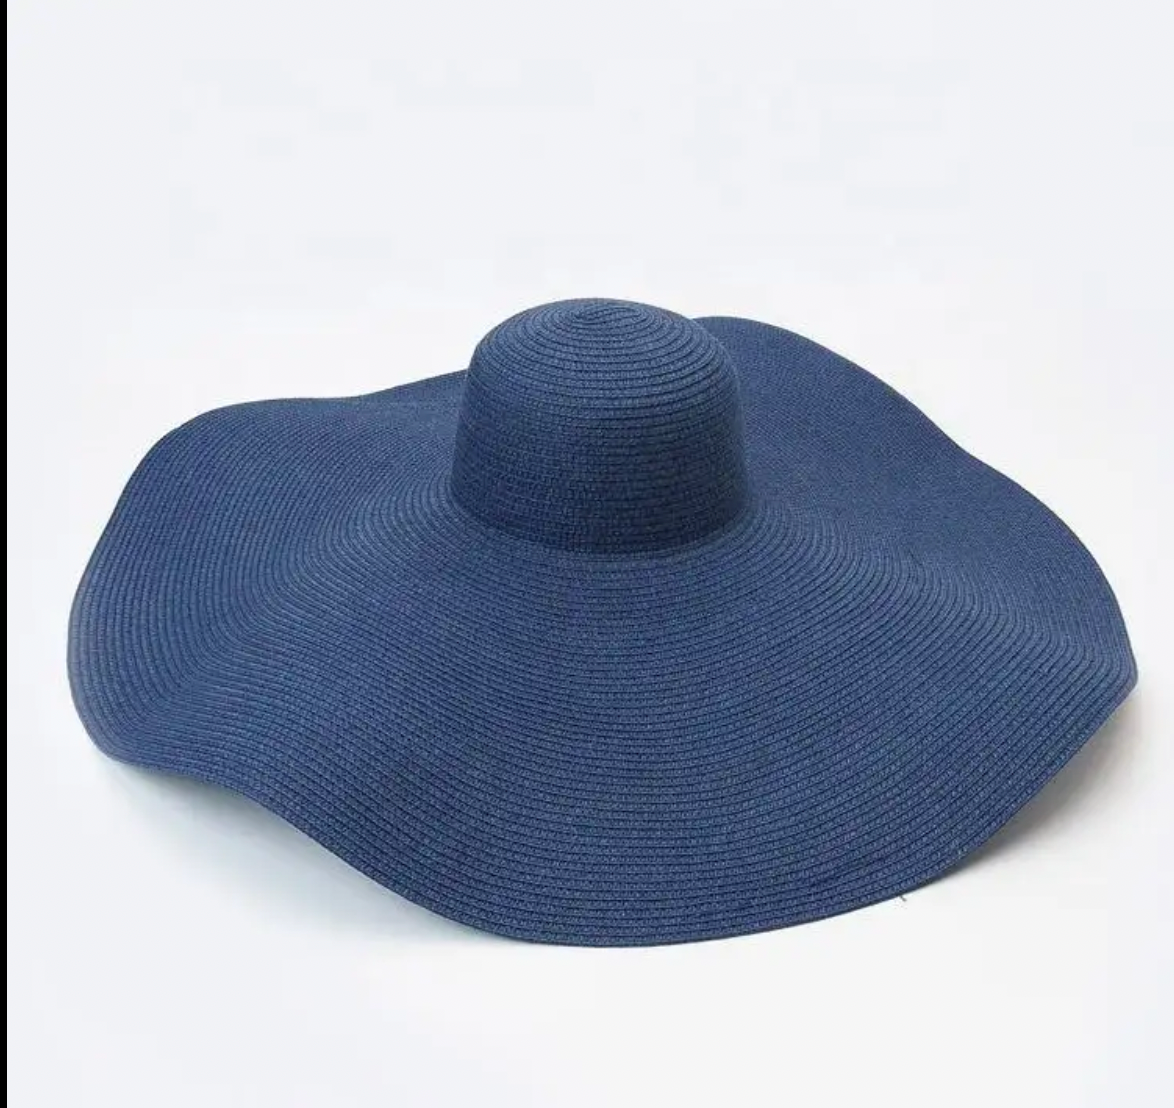 Straw big floppy navy blue hat